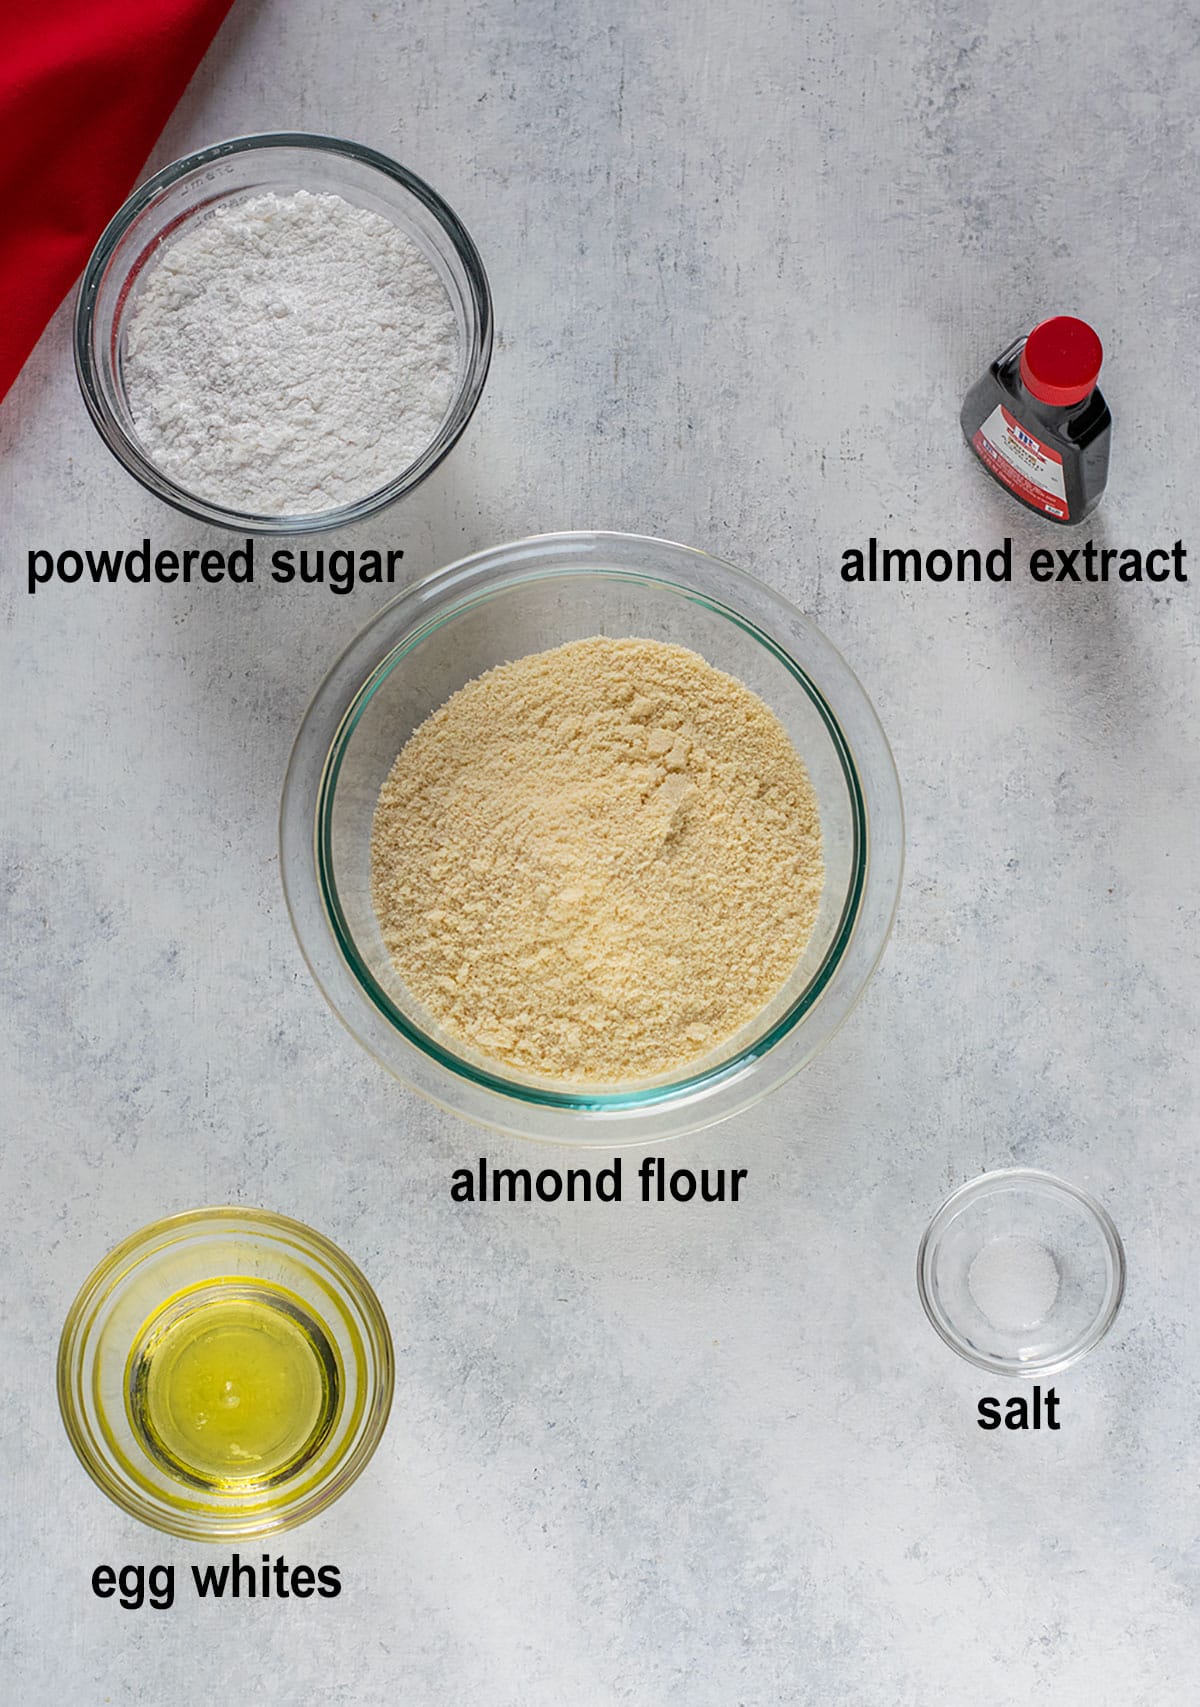 powdered sugar, almond extract, almond flour, egg whites, salt.